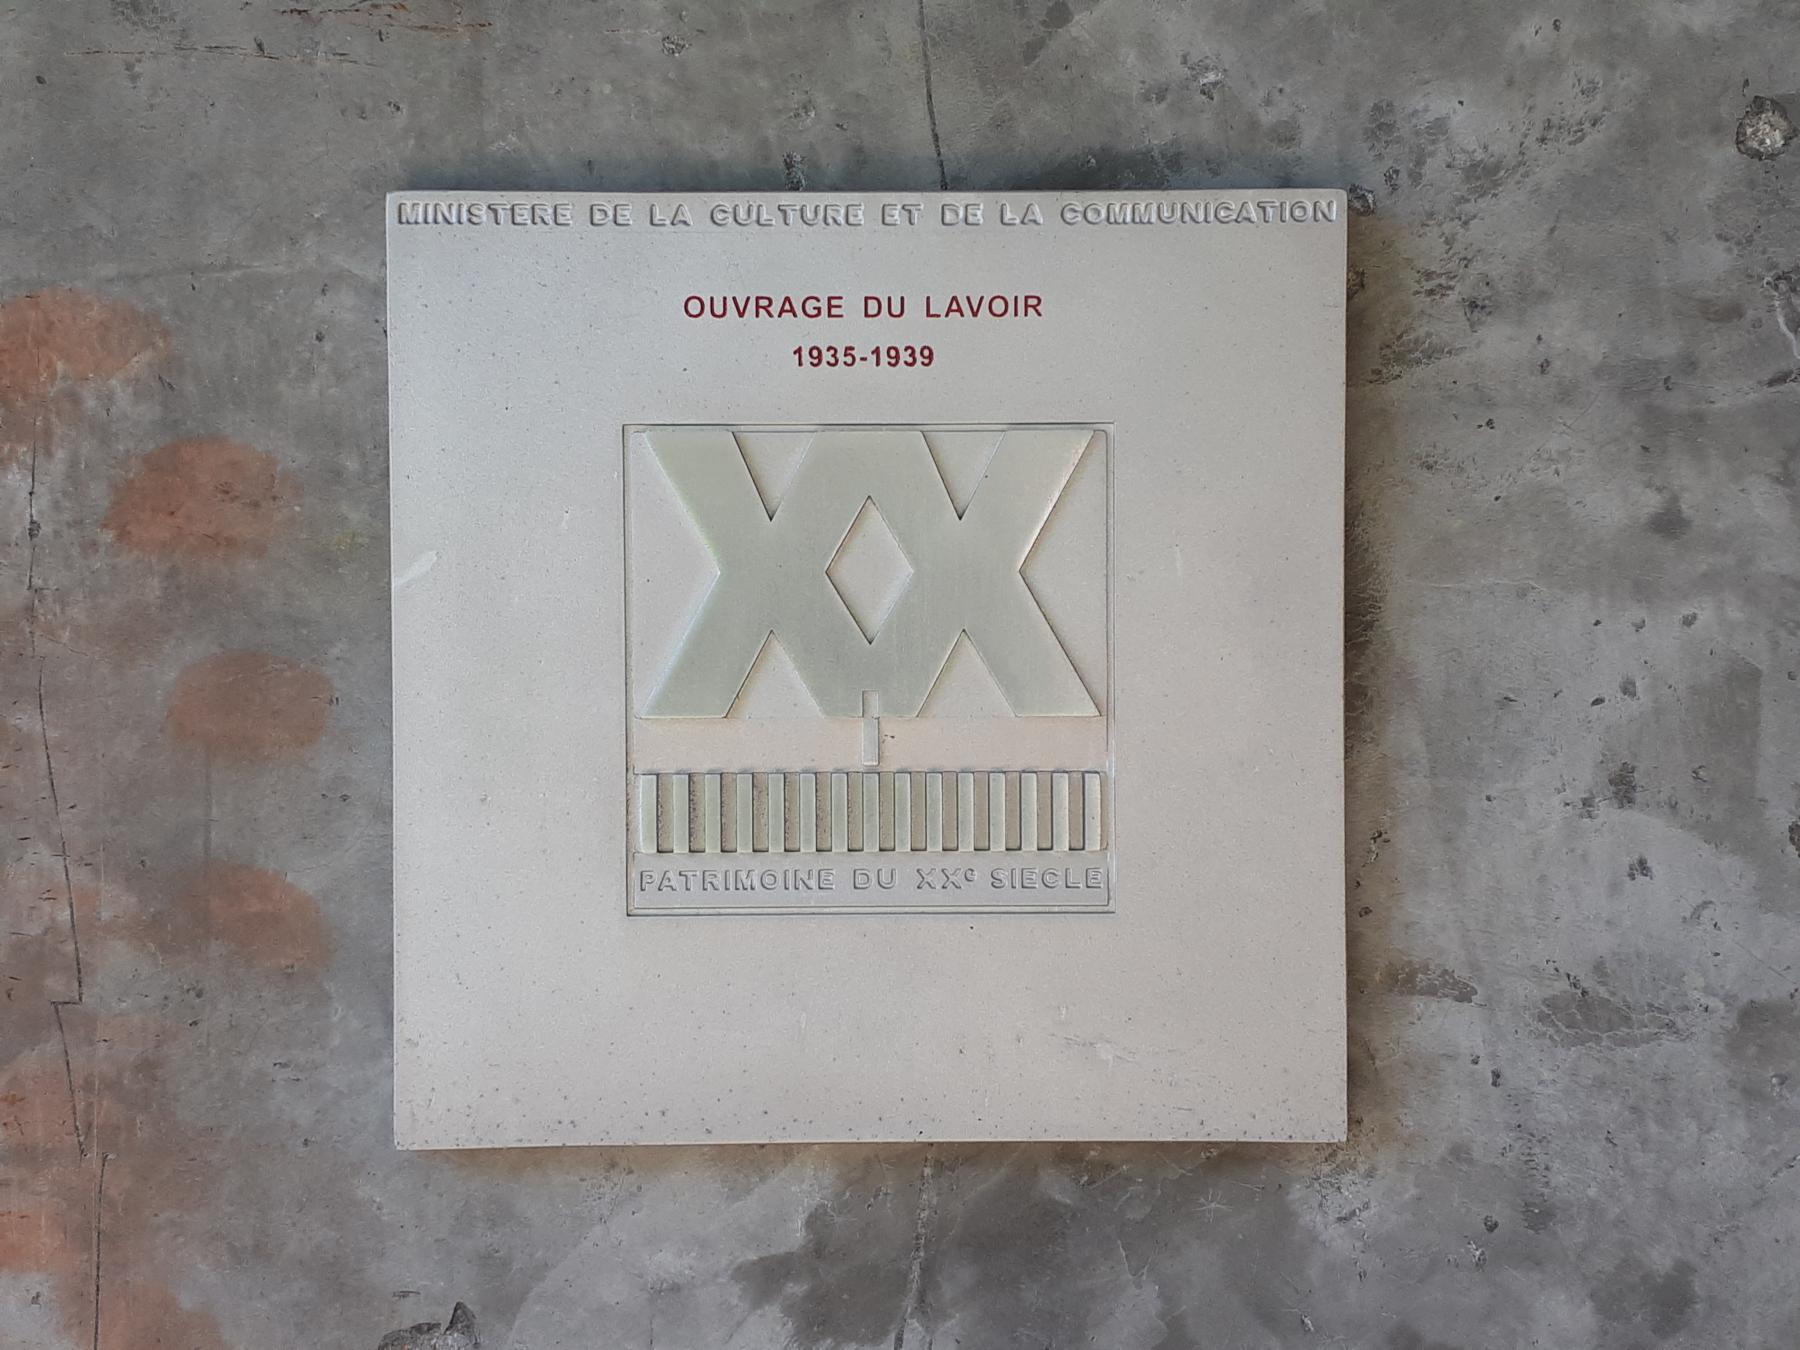 Ligne Maginot - LAVOIR - (Ouvrage d'artillerie) - Entrée munitions
Plaque du ministère de la culture et de la communication